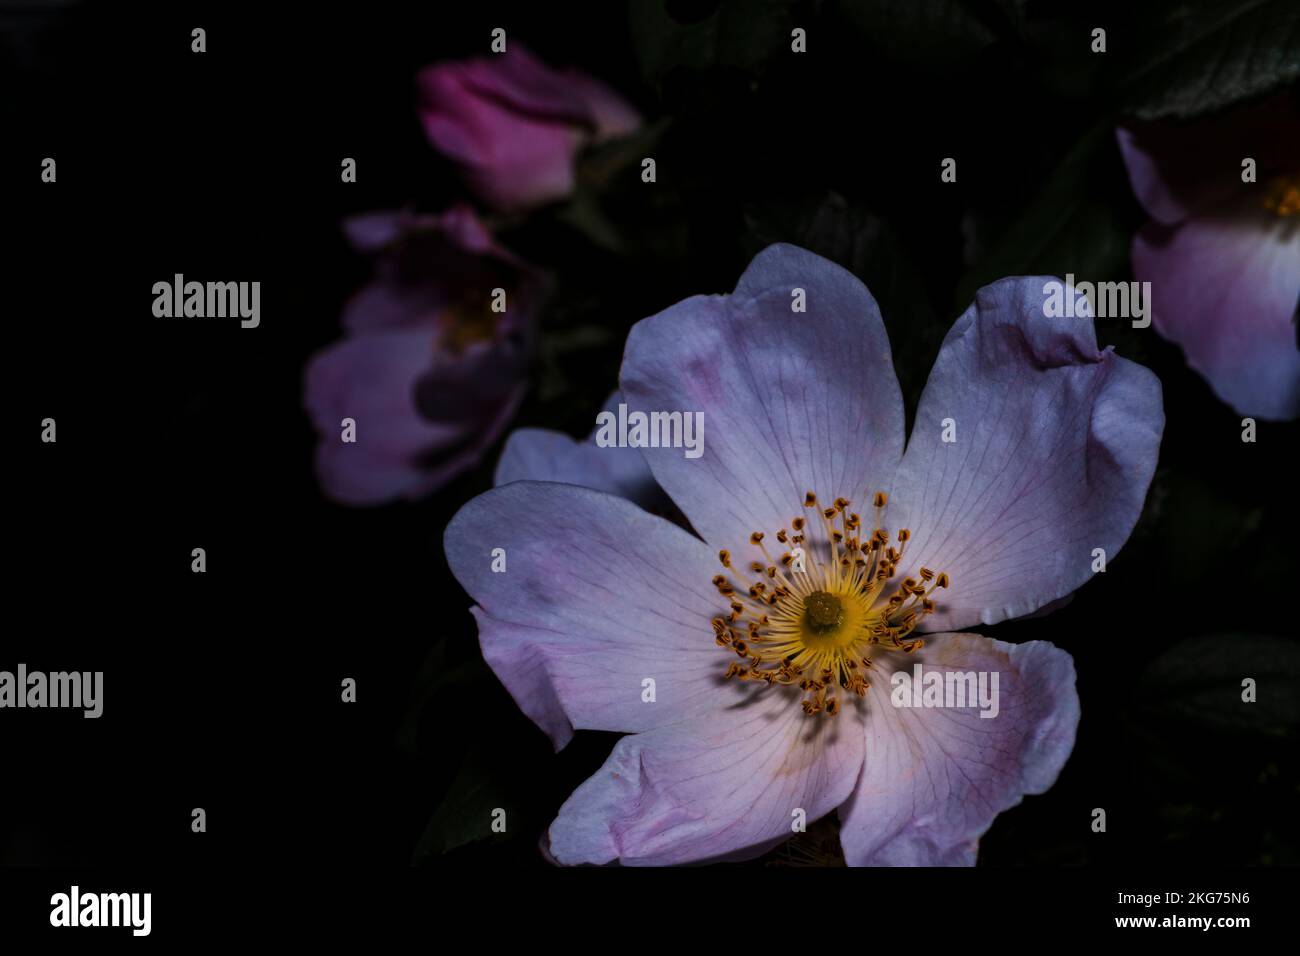 wild rose, macro flower photo, night flower shot Stock Photo